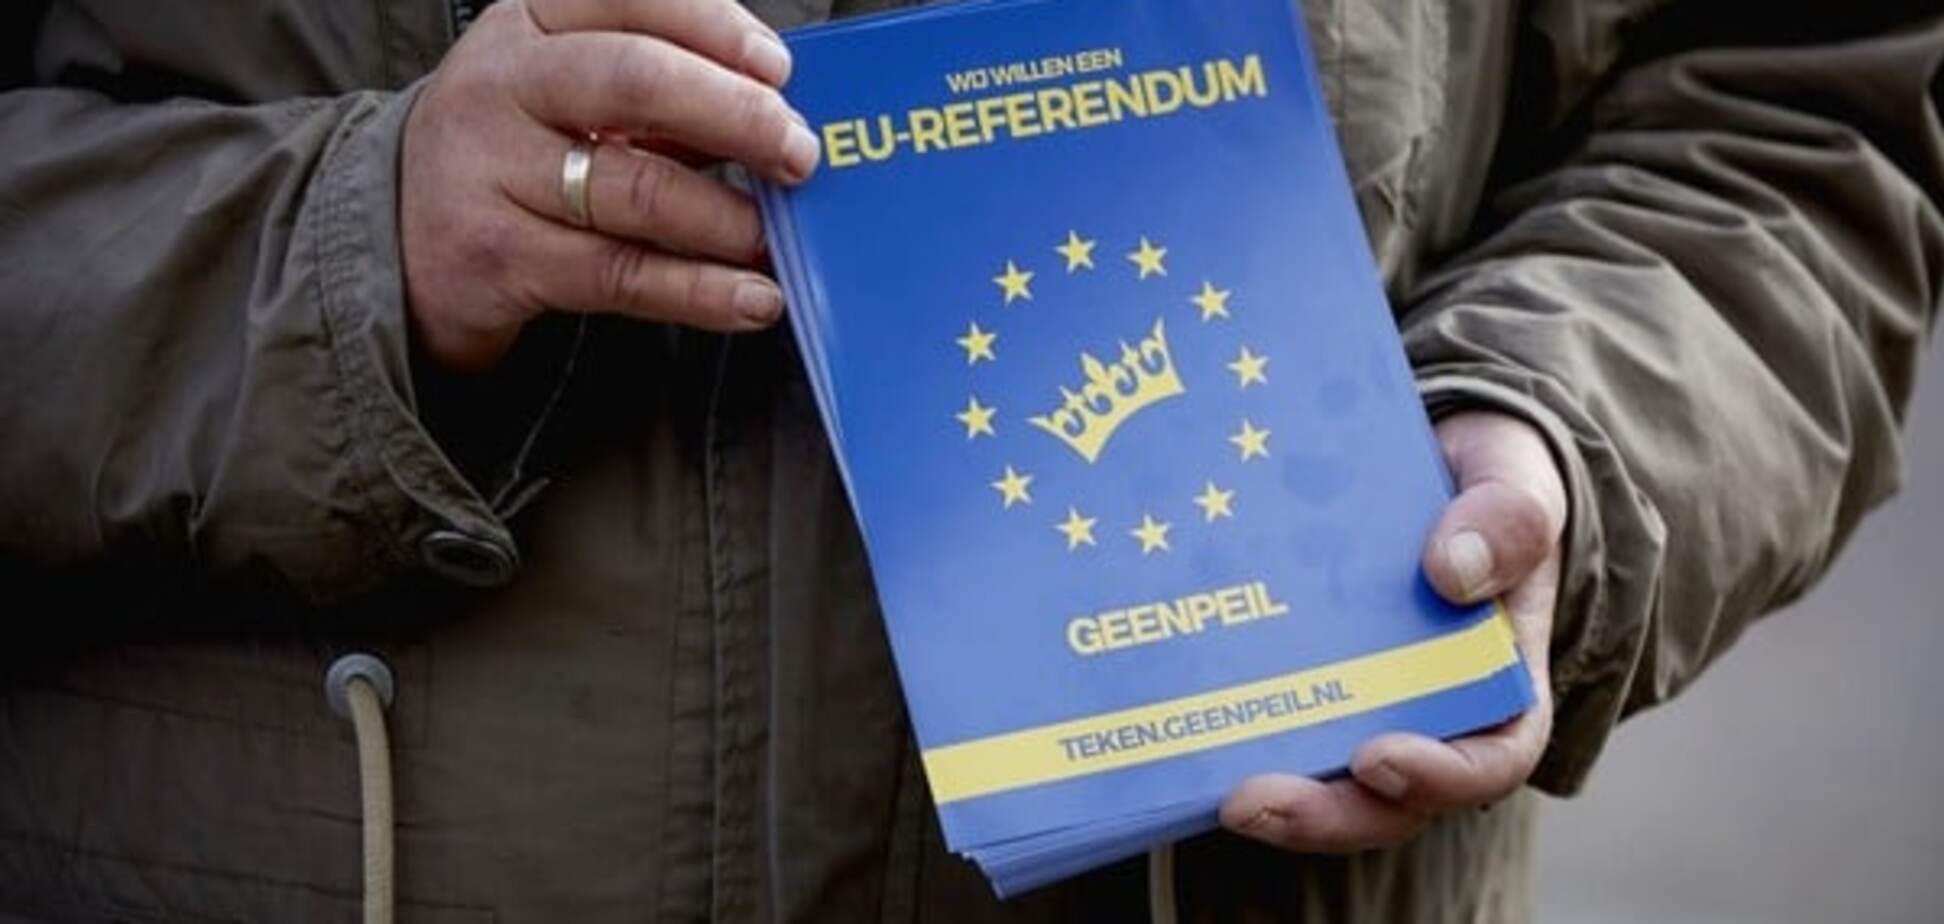 Більш ніж третина голландців відмовили Україні в асоціації з ЄС - опитування 